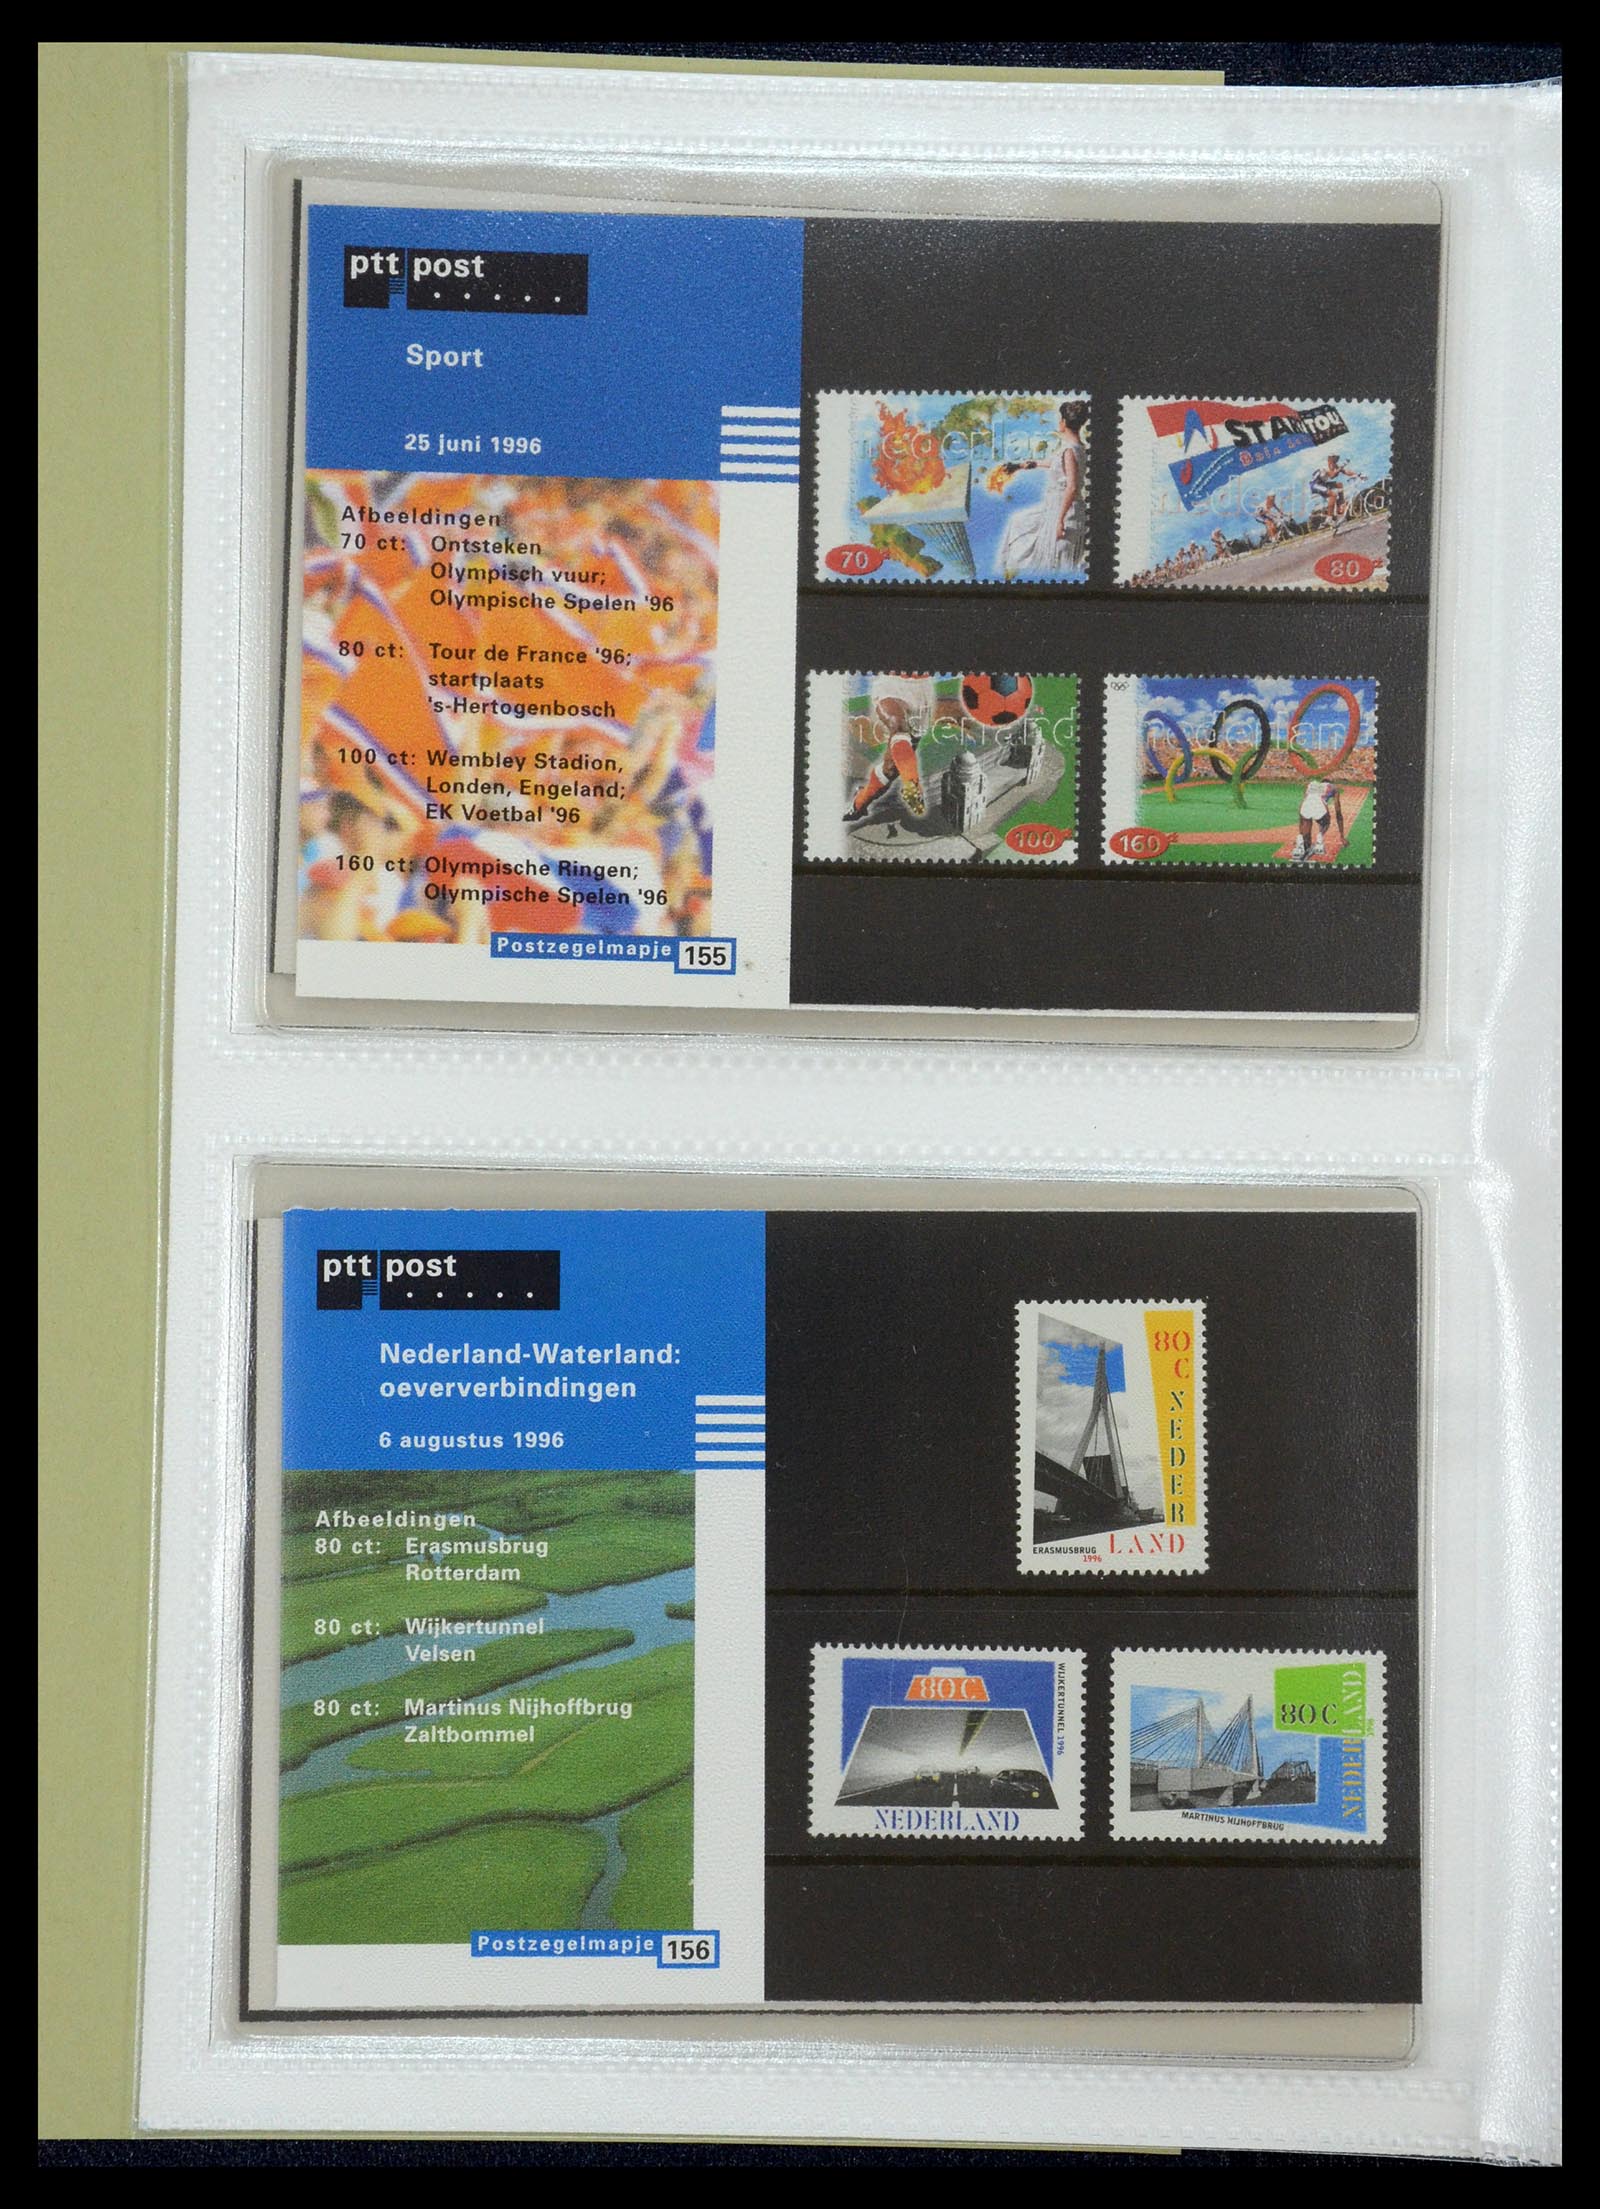 35144 081 - Stamp Collection 35144 Netherlands PTT presentation packs 1982-2021!